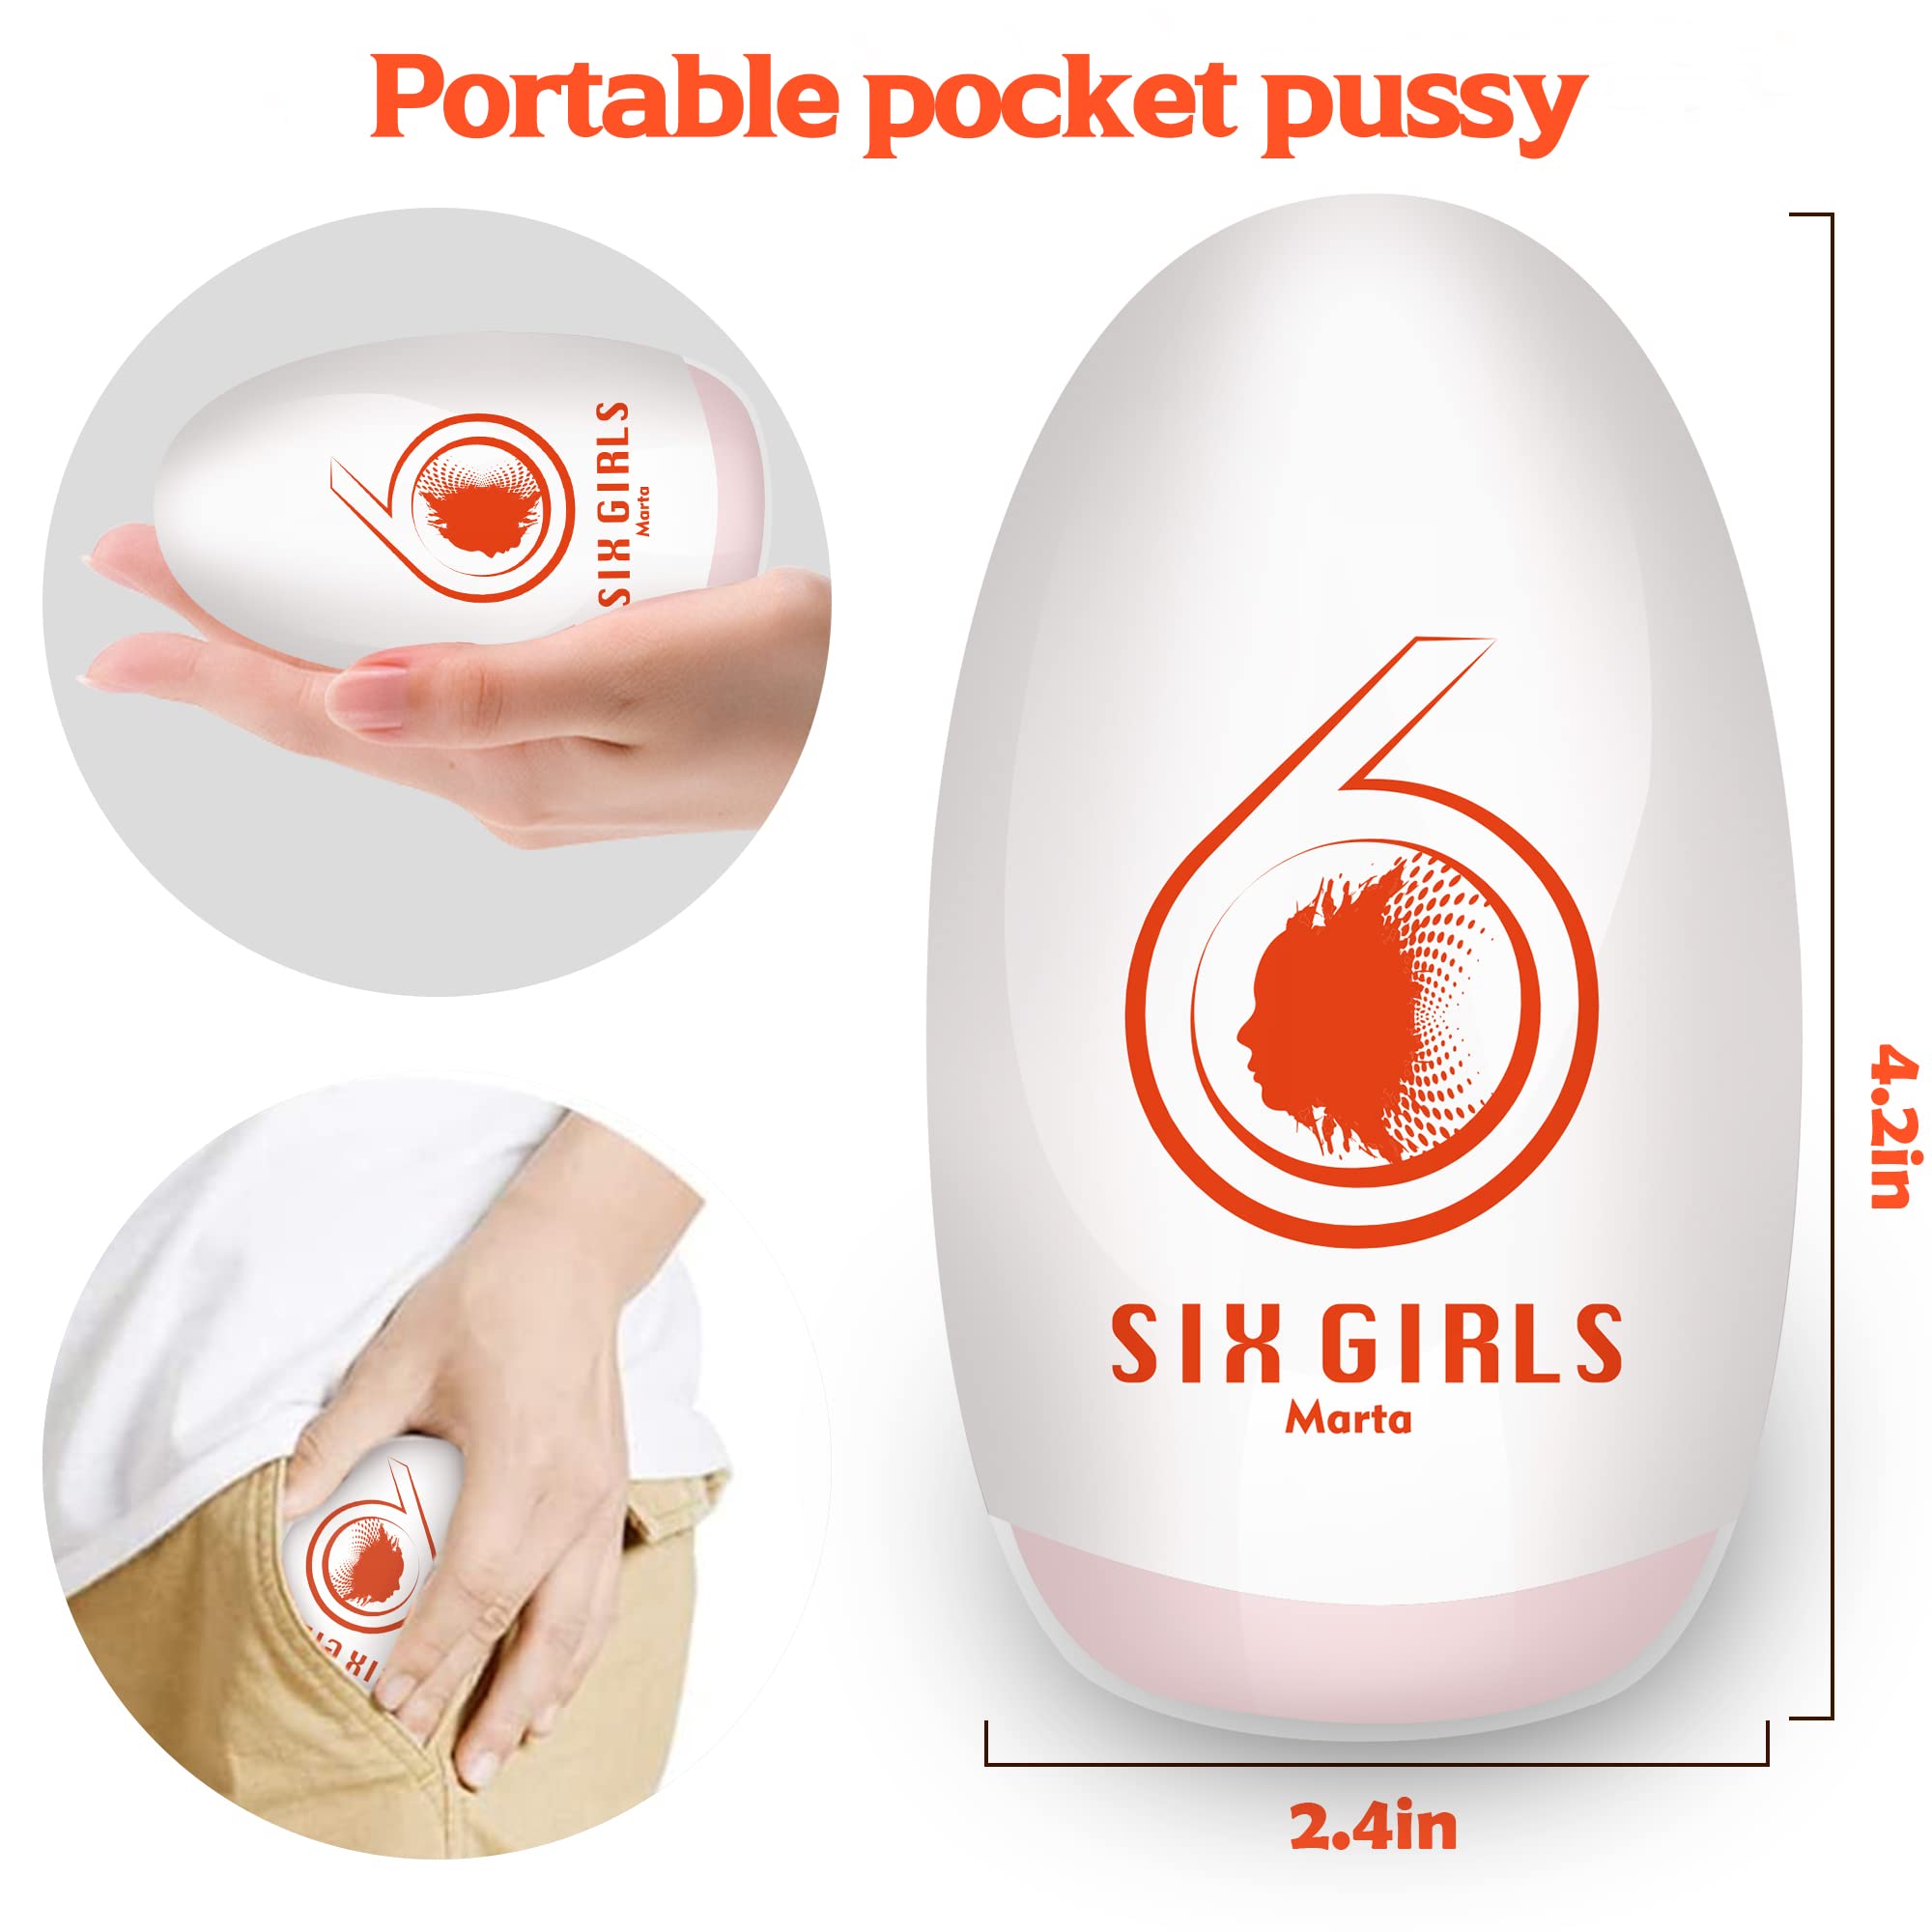 4.2IN Portable Pocket Pussy Stroker